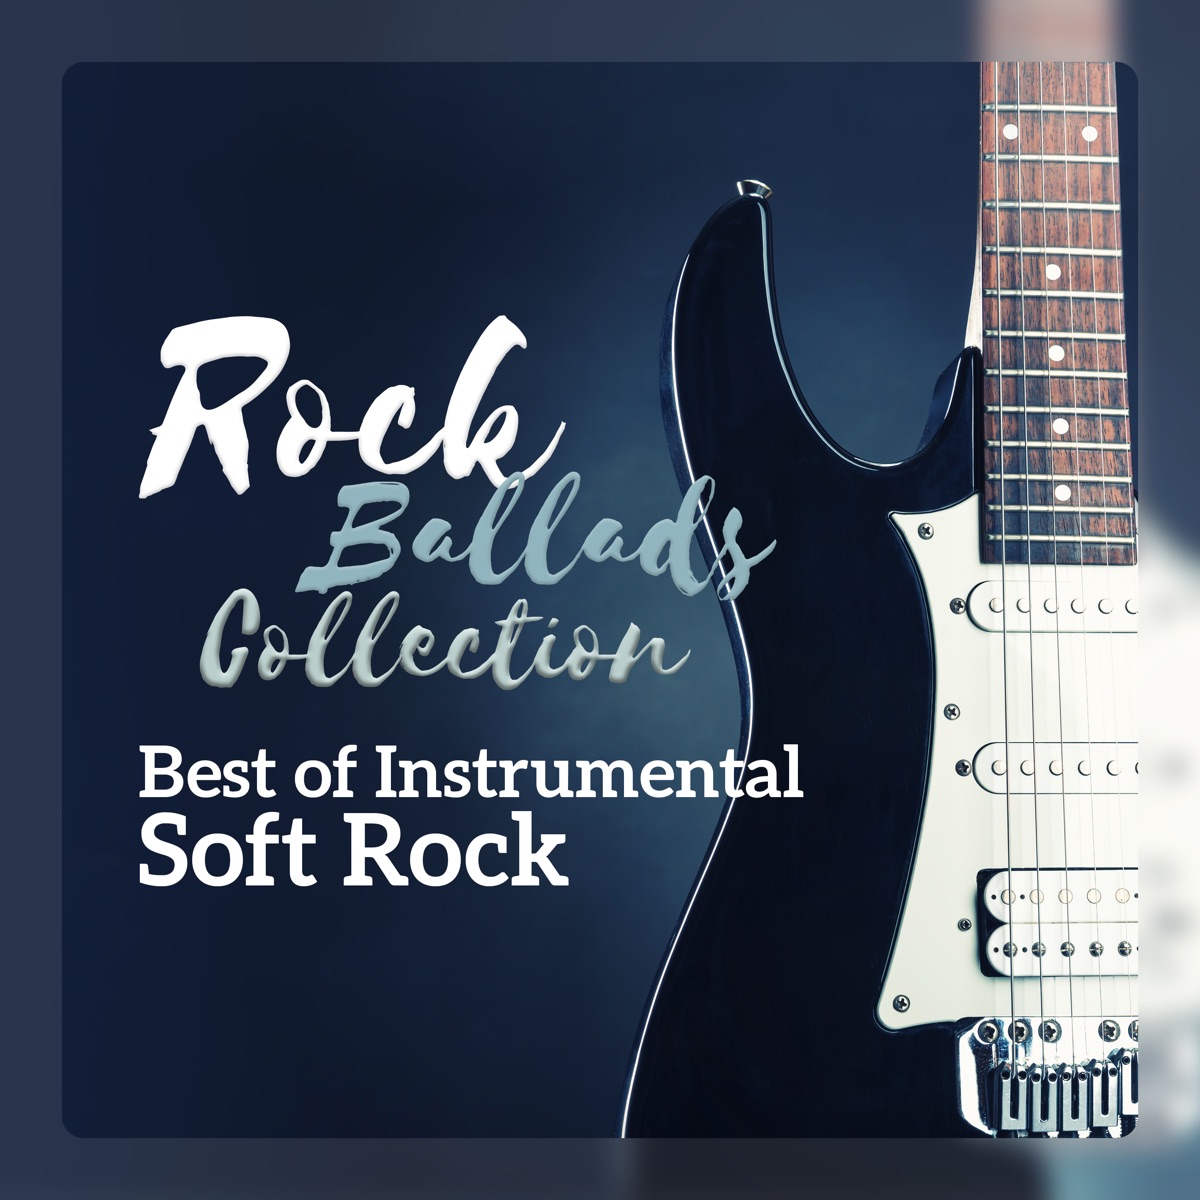 Rock Ballads Collection - Best of Instrumental Soft Rock - Album by Rock  Destination Team - Apple Music